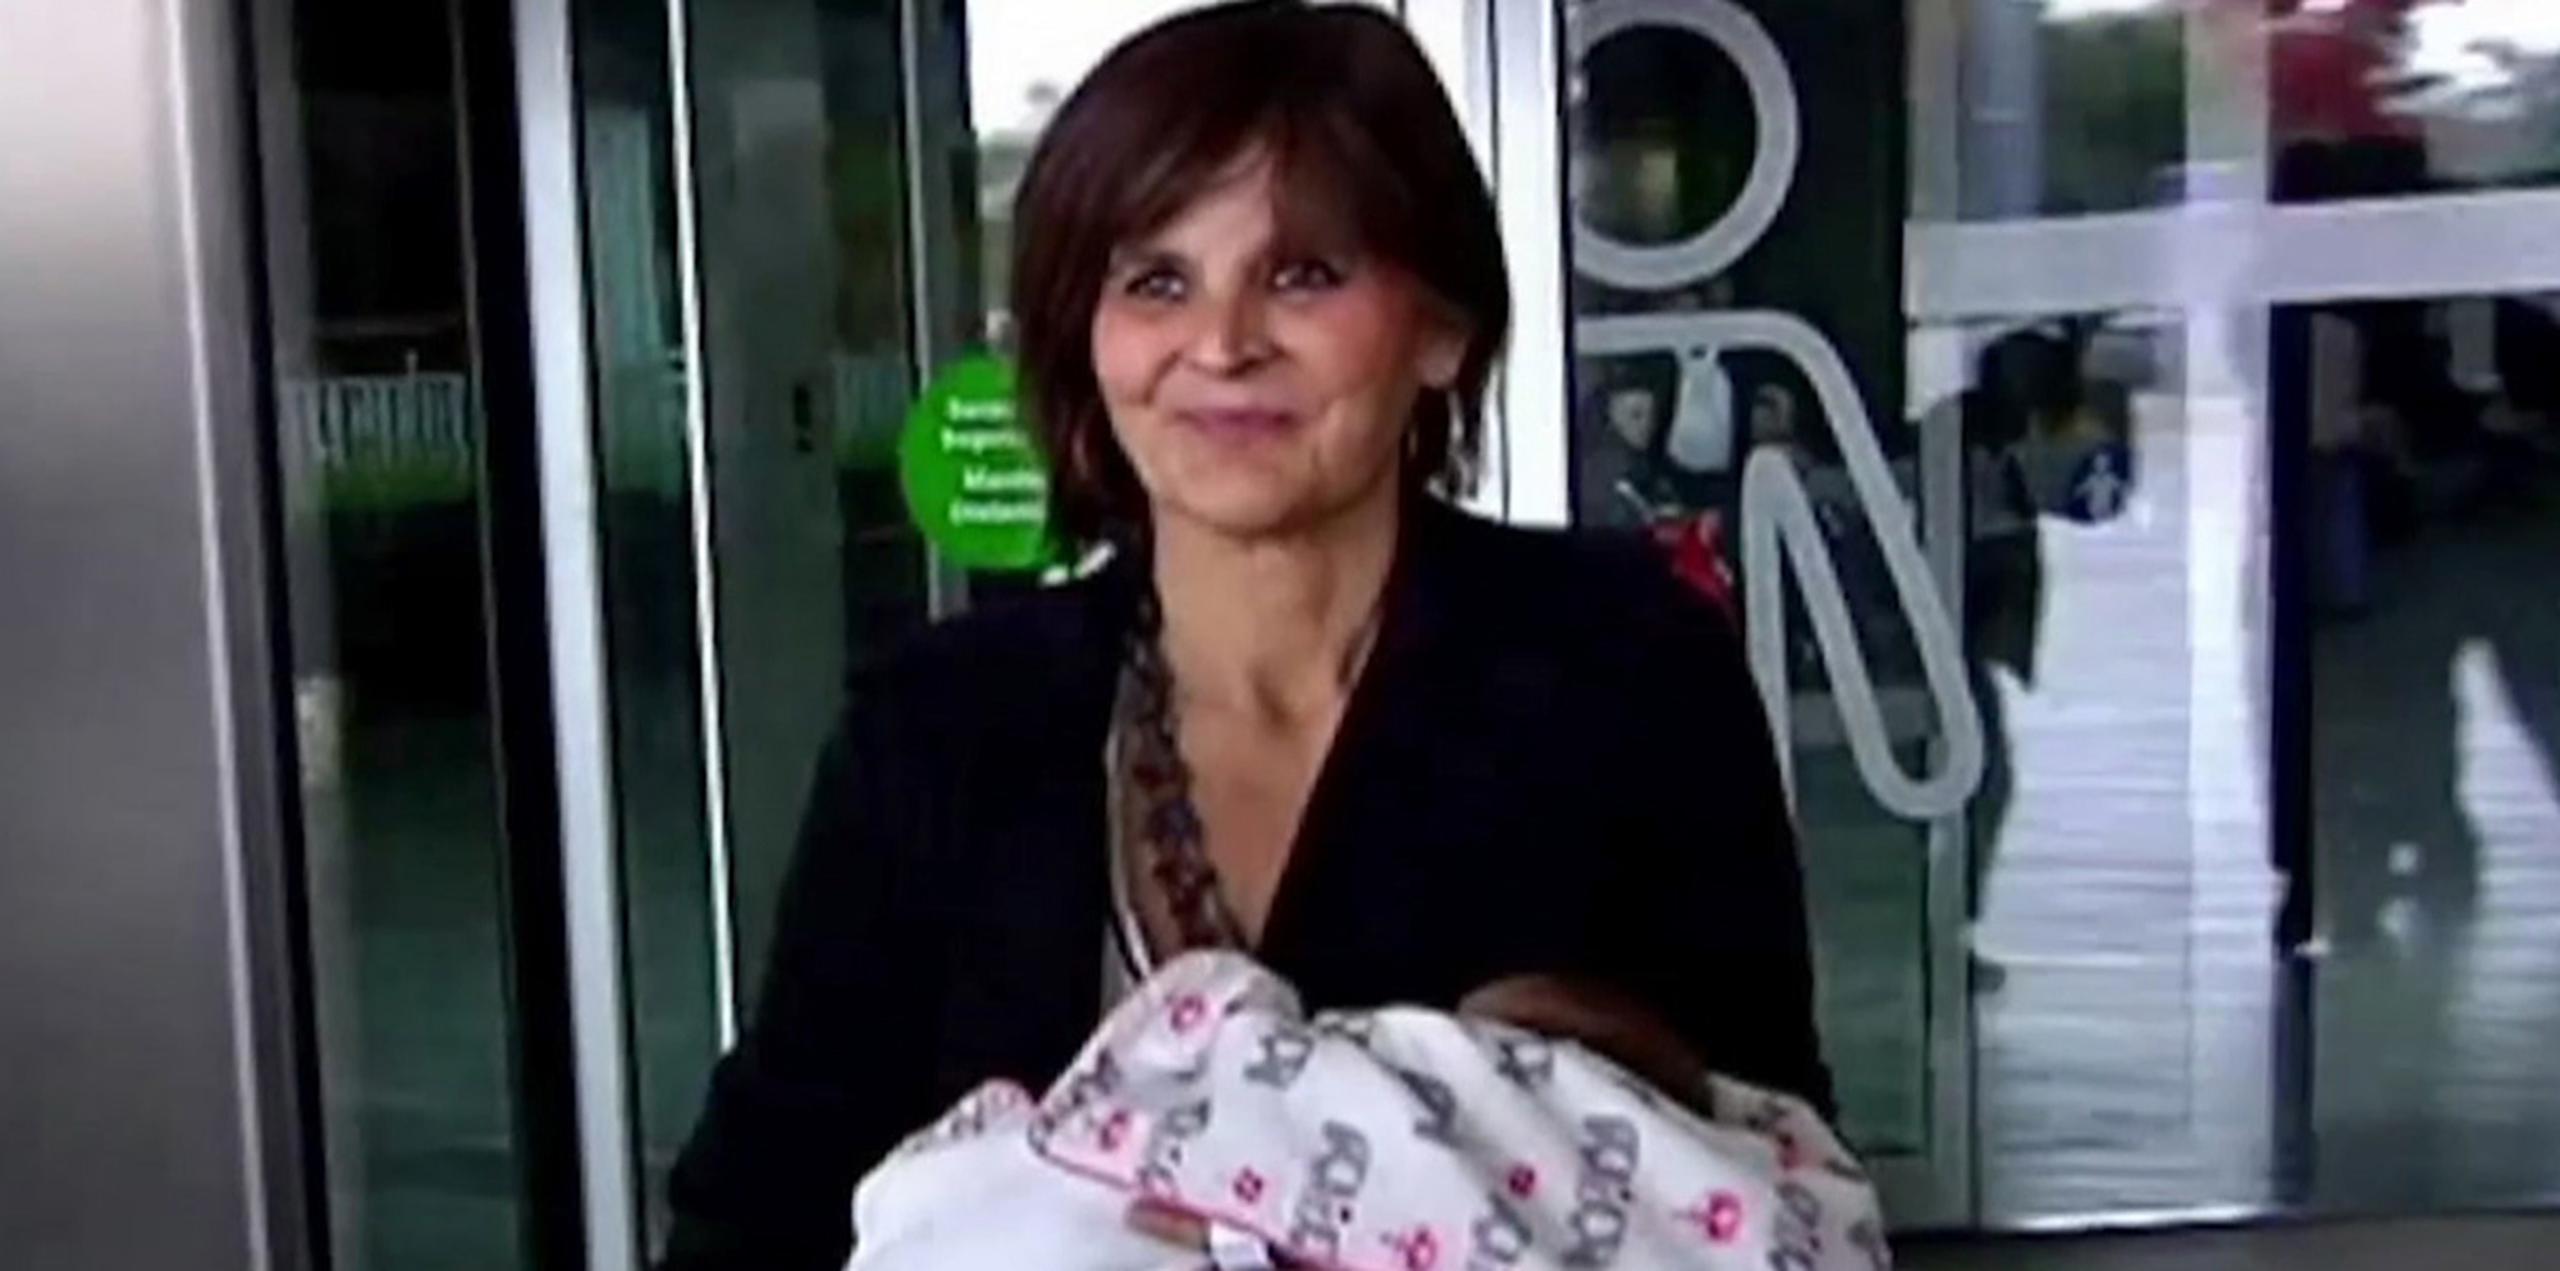 Lina Álvarez salió del Hospital Lucus Augusti, en la ciudad de Lugo, el martes con su hija en sus brazos diciendo que se sentía maravillosamente.  (AP)